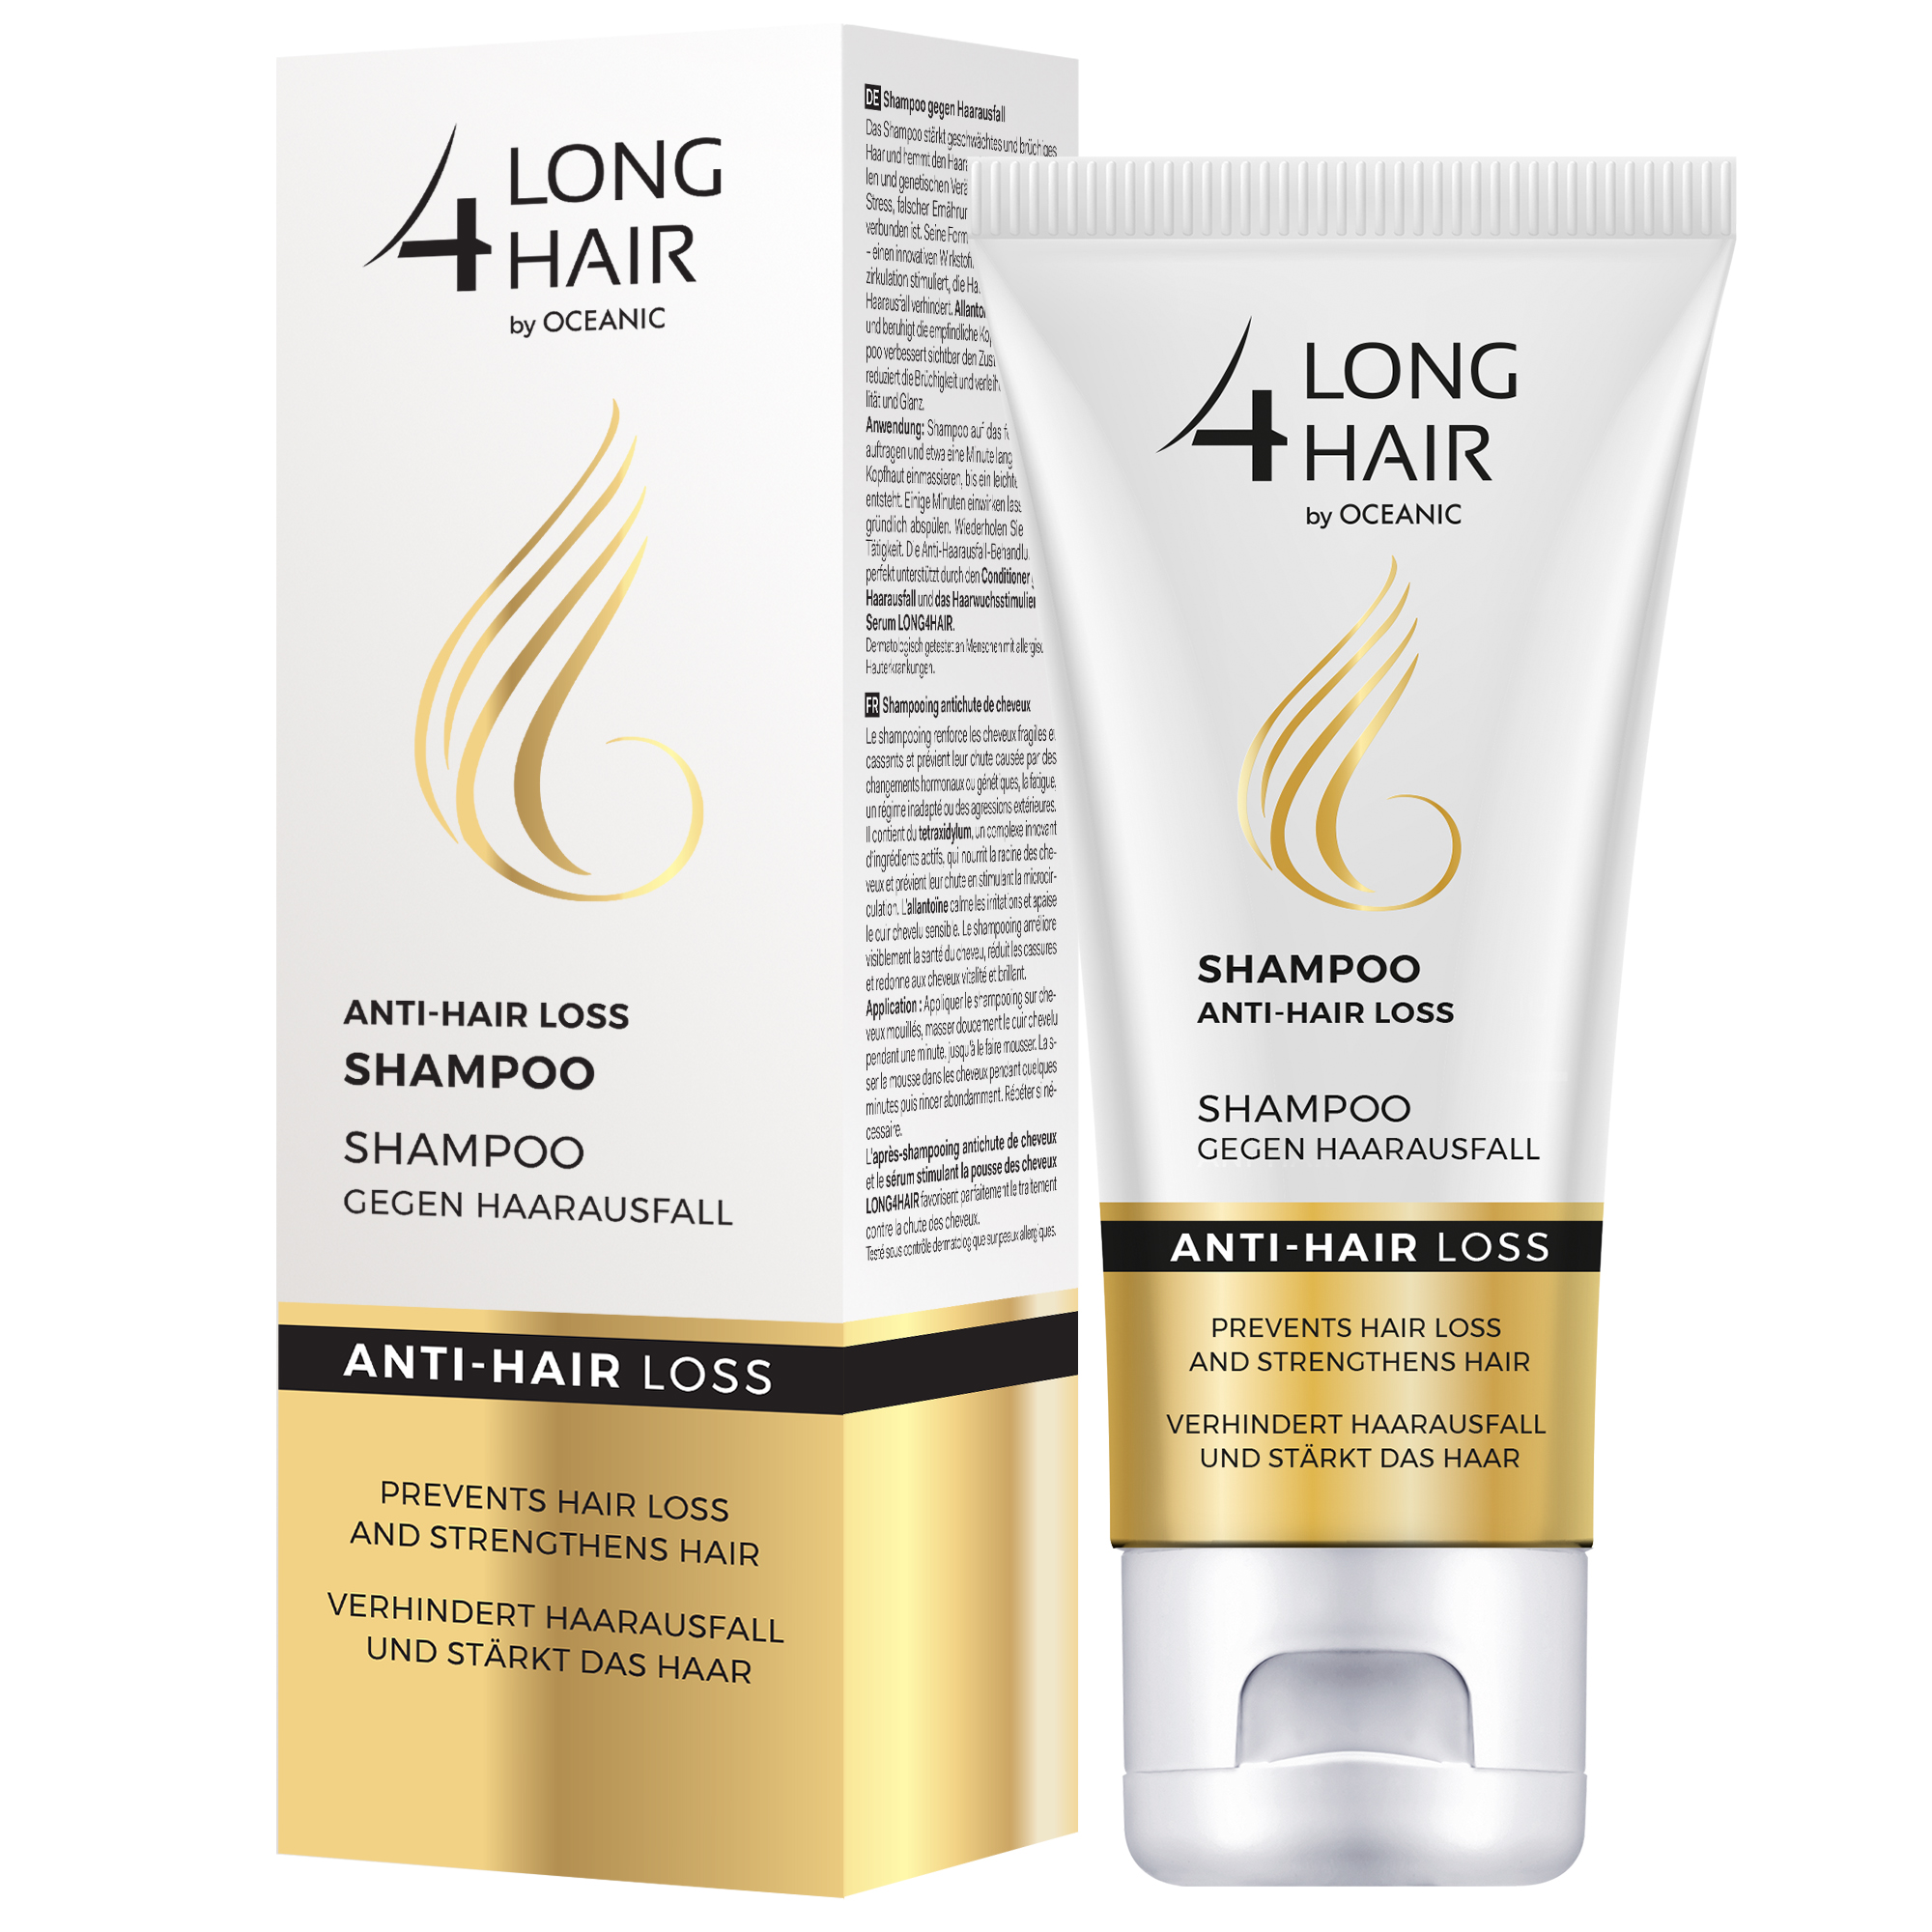 Long 4 Hair Anti-hair loss shampoo 200ml - The Studio 2